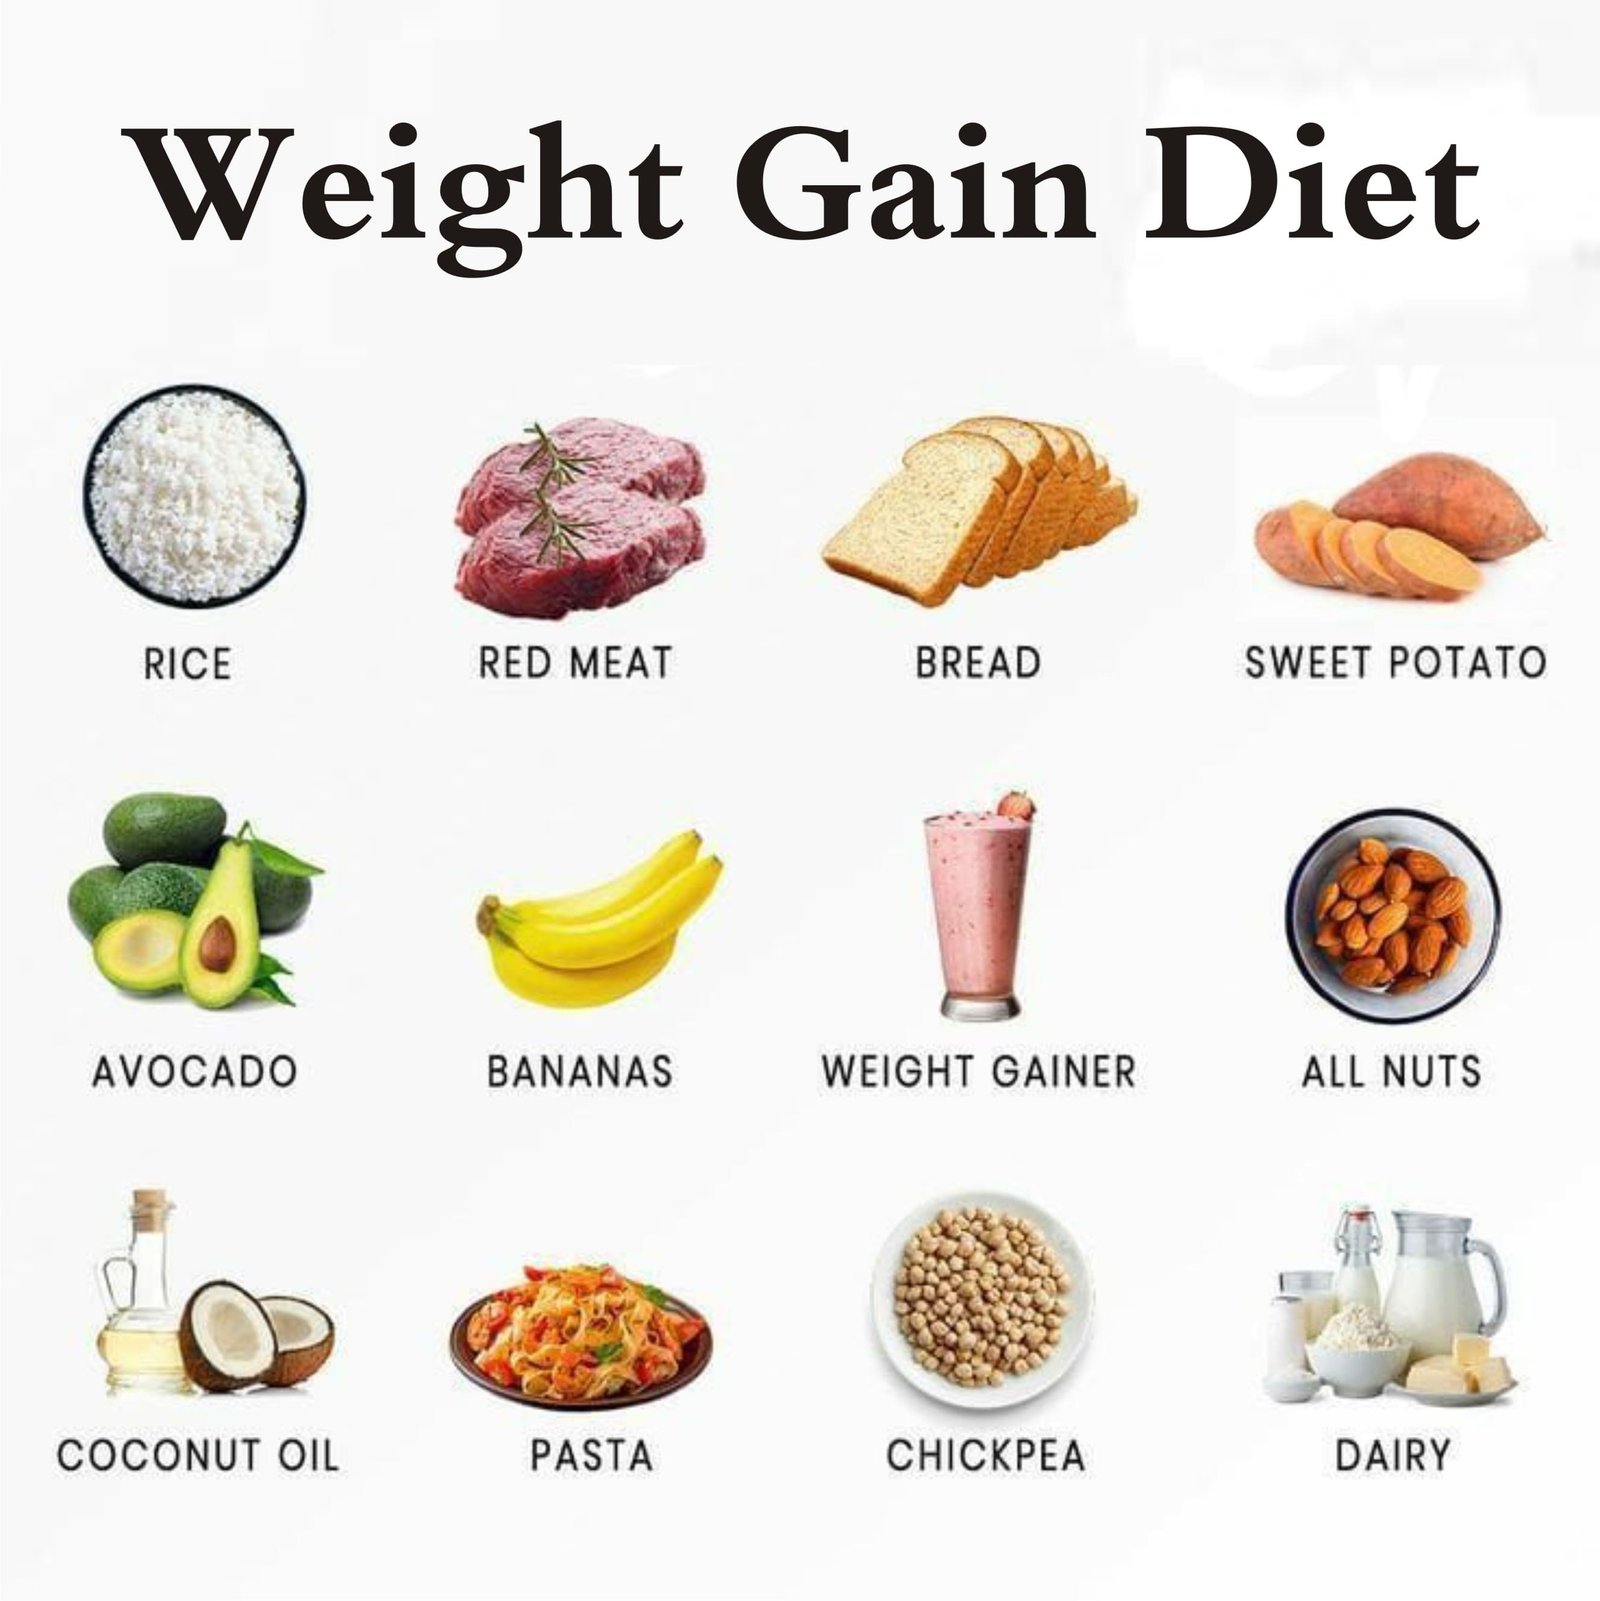 Weight Gain Diet